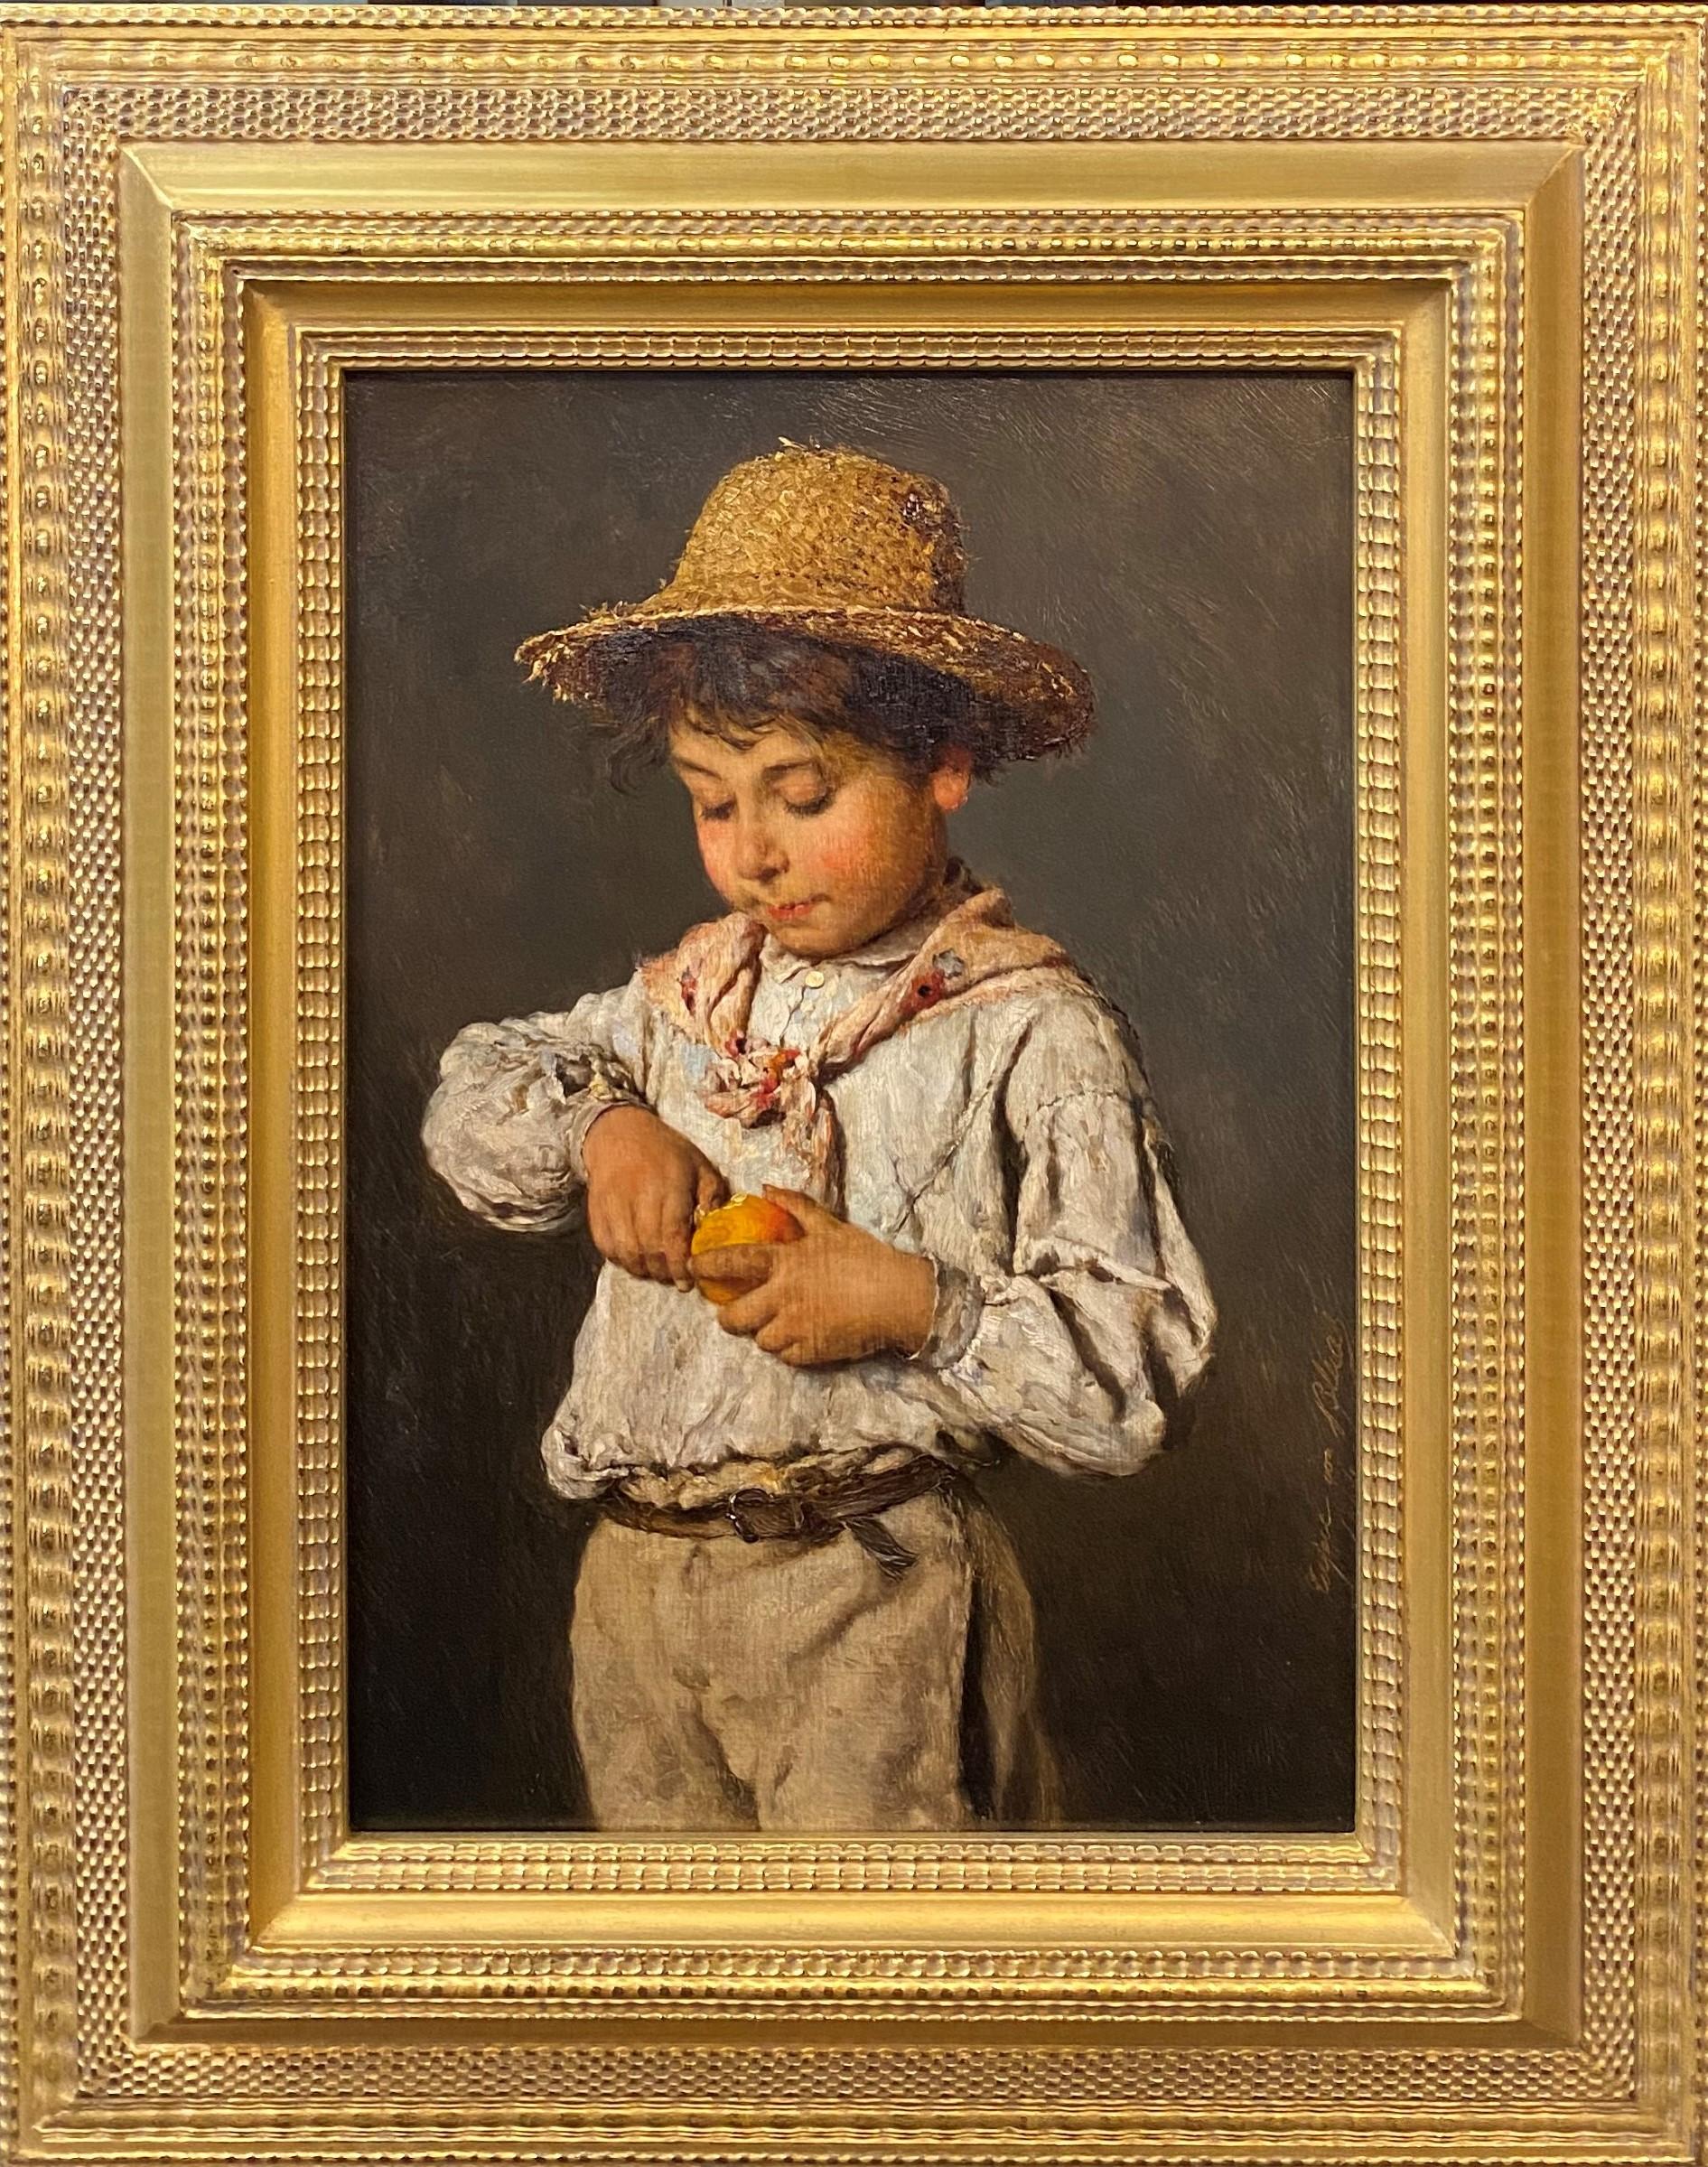 Portrait Painting Eugene von Blaas - Portrait d'un garçon cueillant des fruits